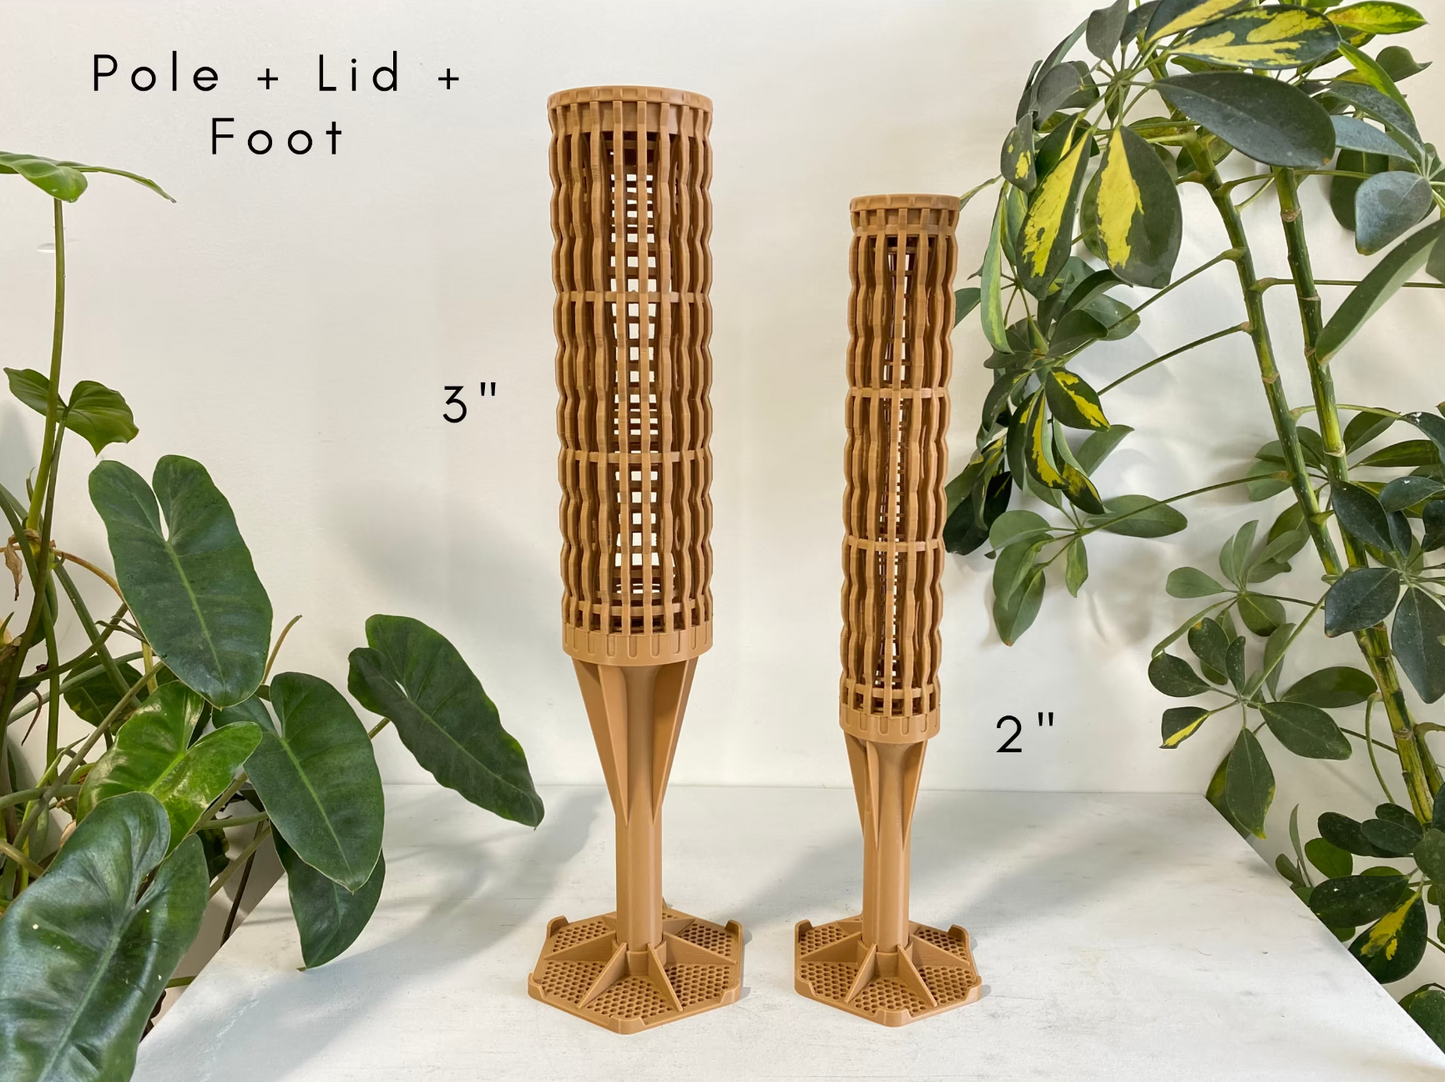 4.0″Φ/XXL Pro Series Plant Poles: Enhance Your Space with the Ultra-Sturdy Extendable Boho Designer Moss Pole by OrchidBox